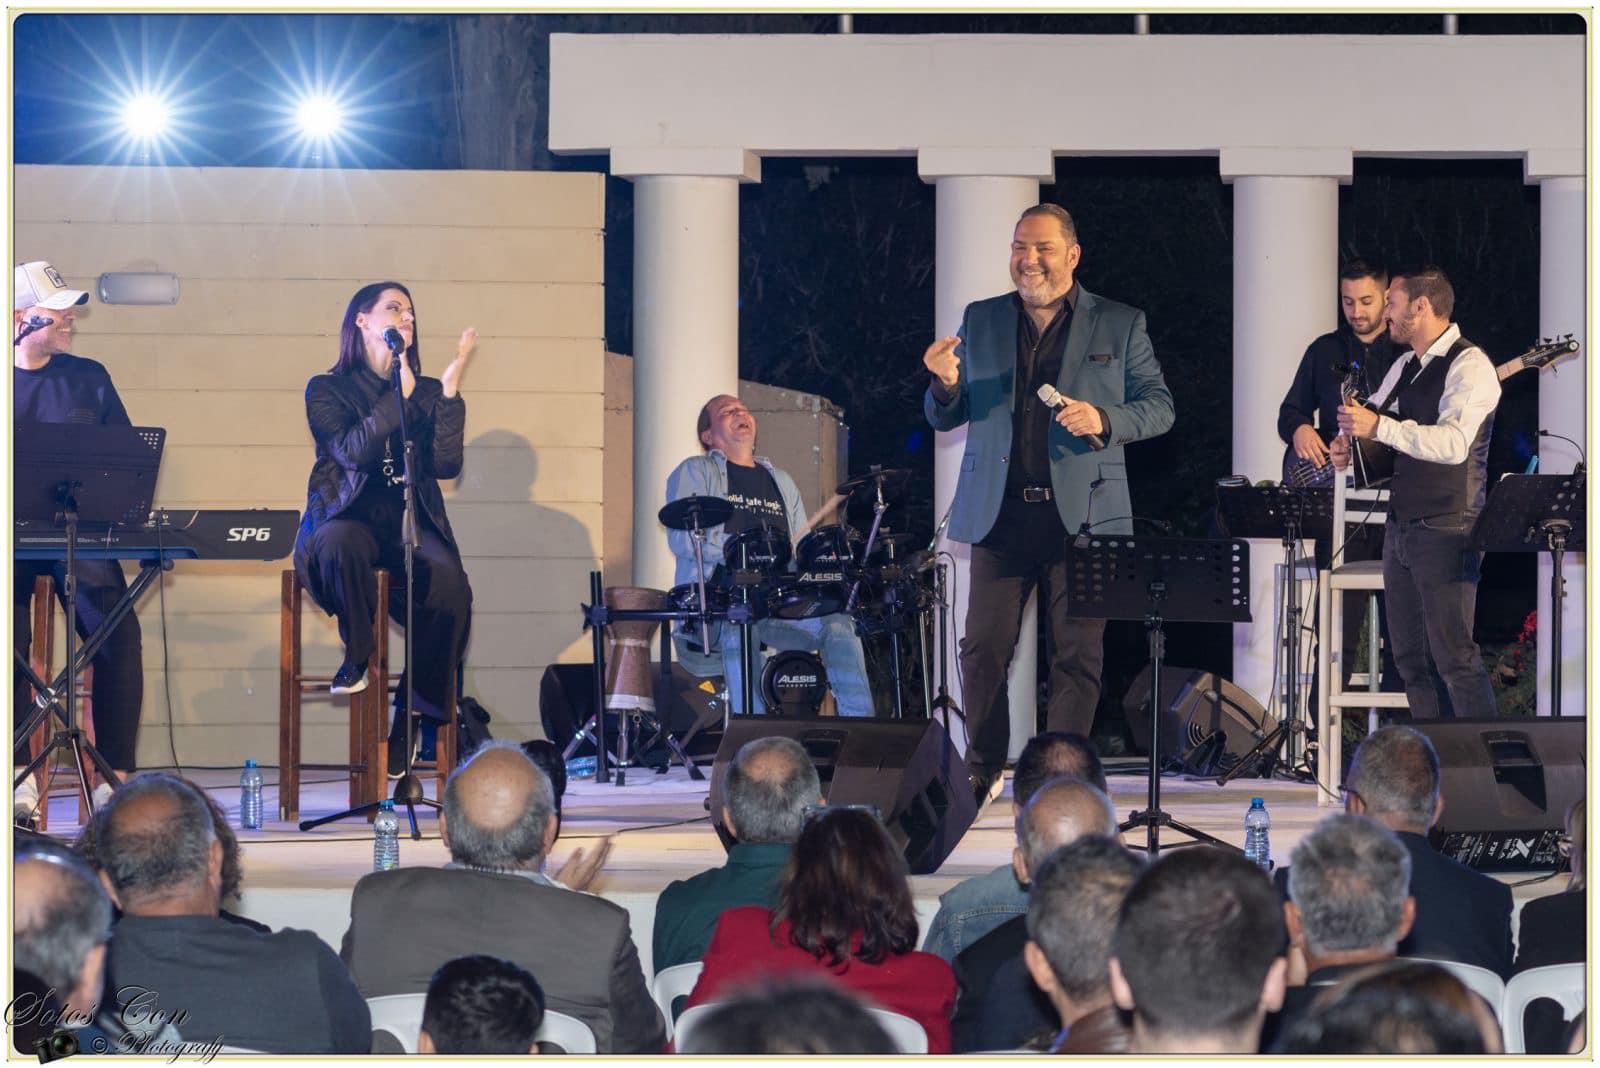 Μεγάλη επιτυχία η συναυλία από τον Έλληνα καλλιτέχνη Στέλιο Διονυσίου στον Δήμο Λιβαδιών